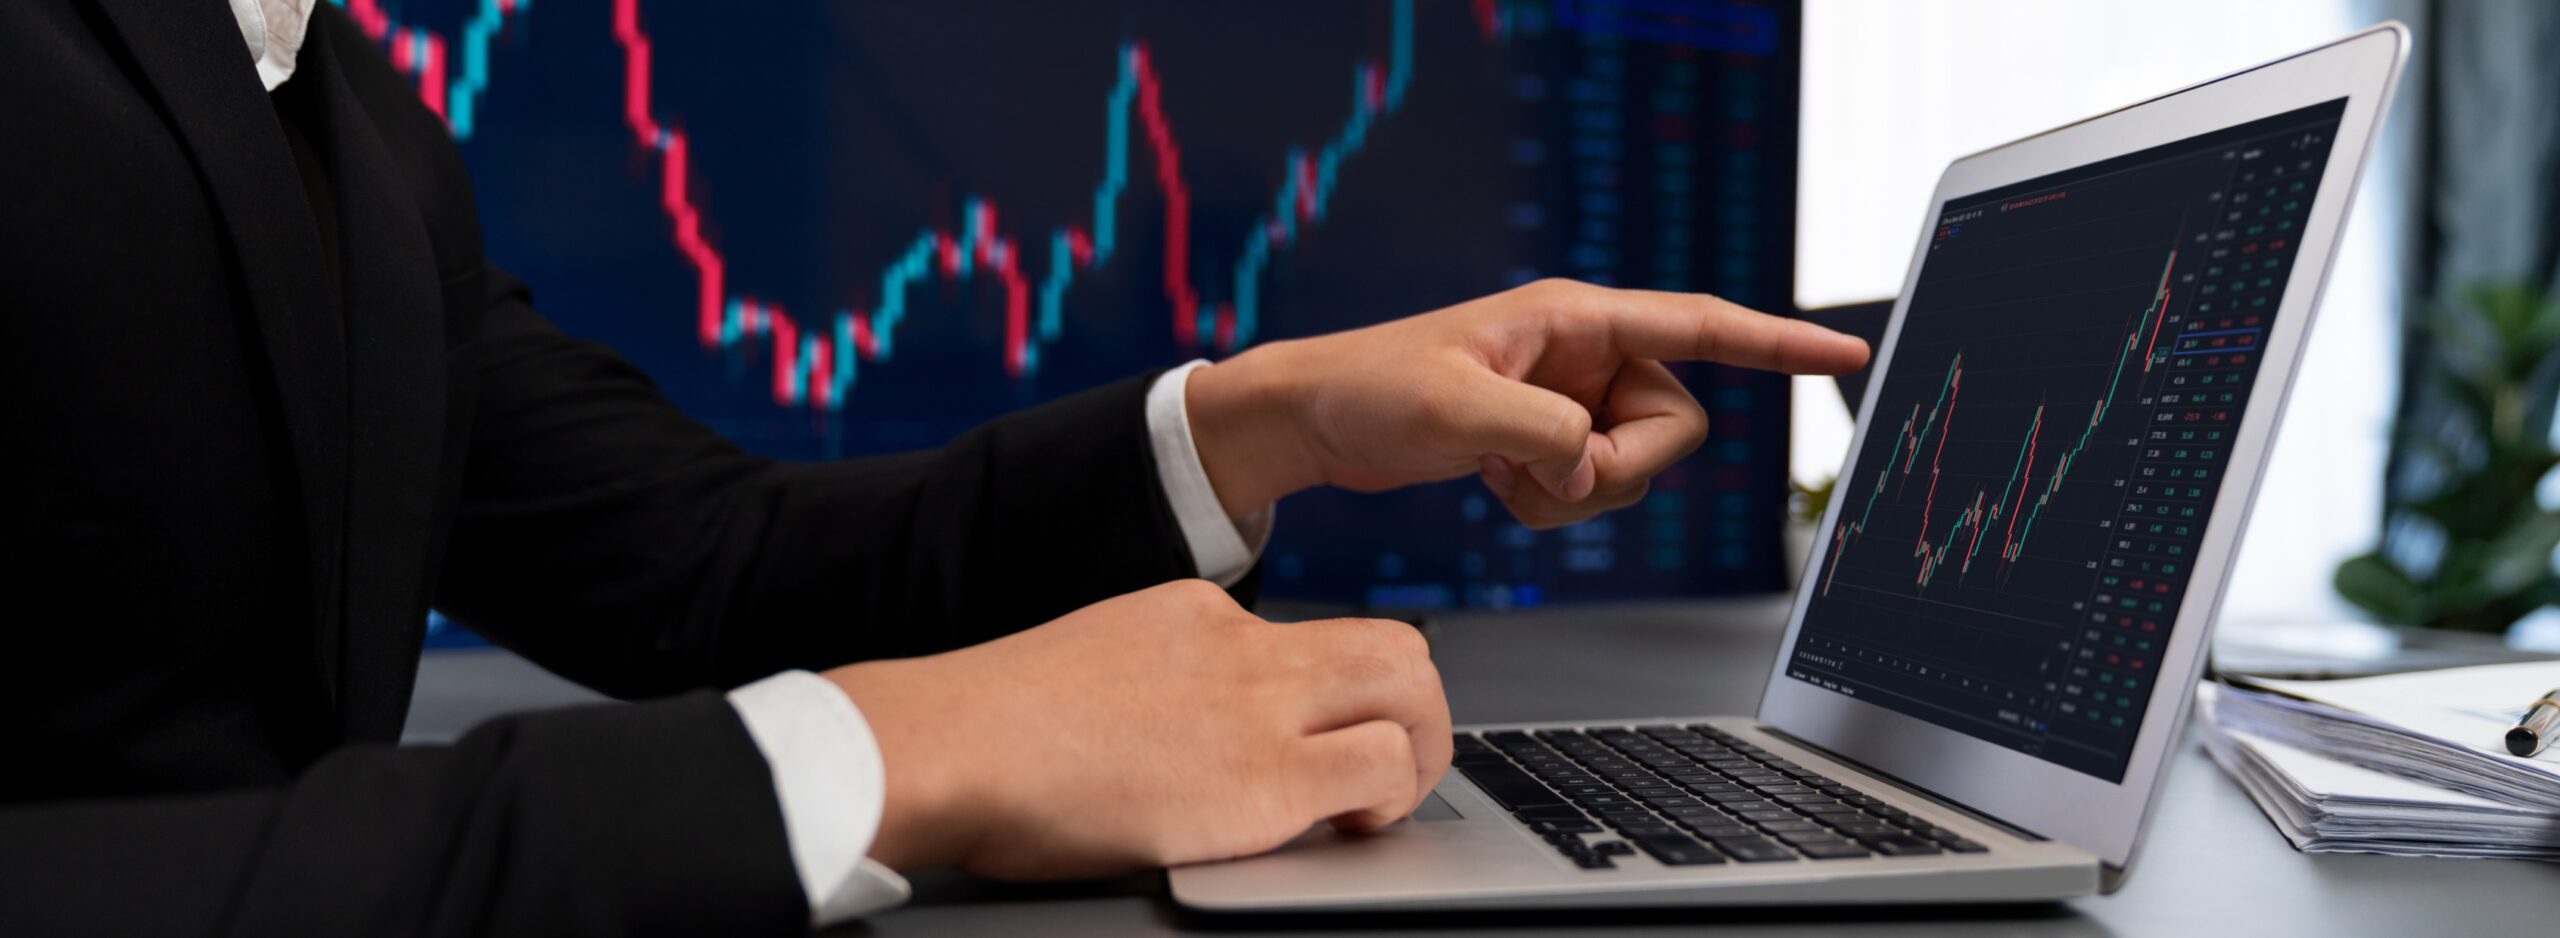 Laptop mit Börsenkurs für Asset Management